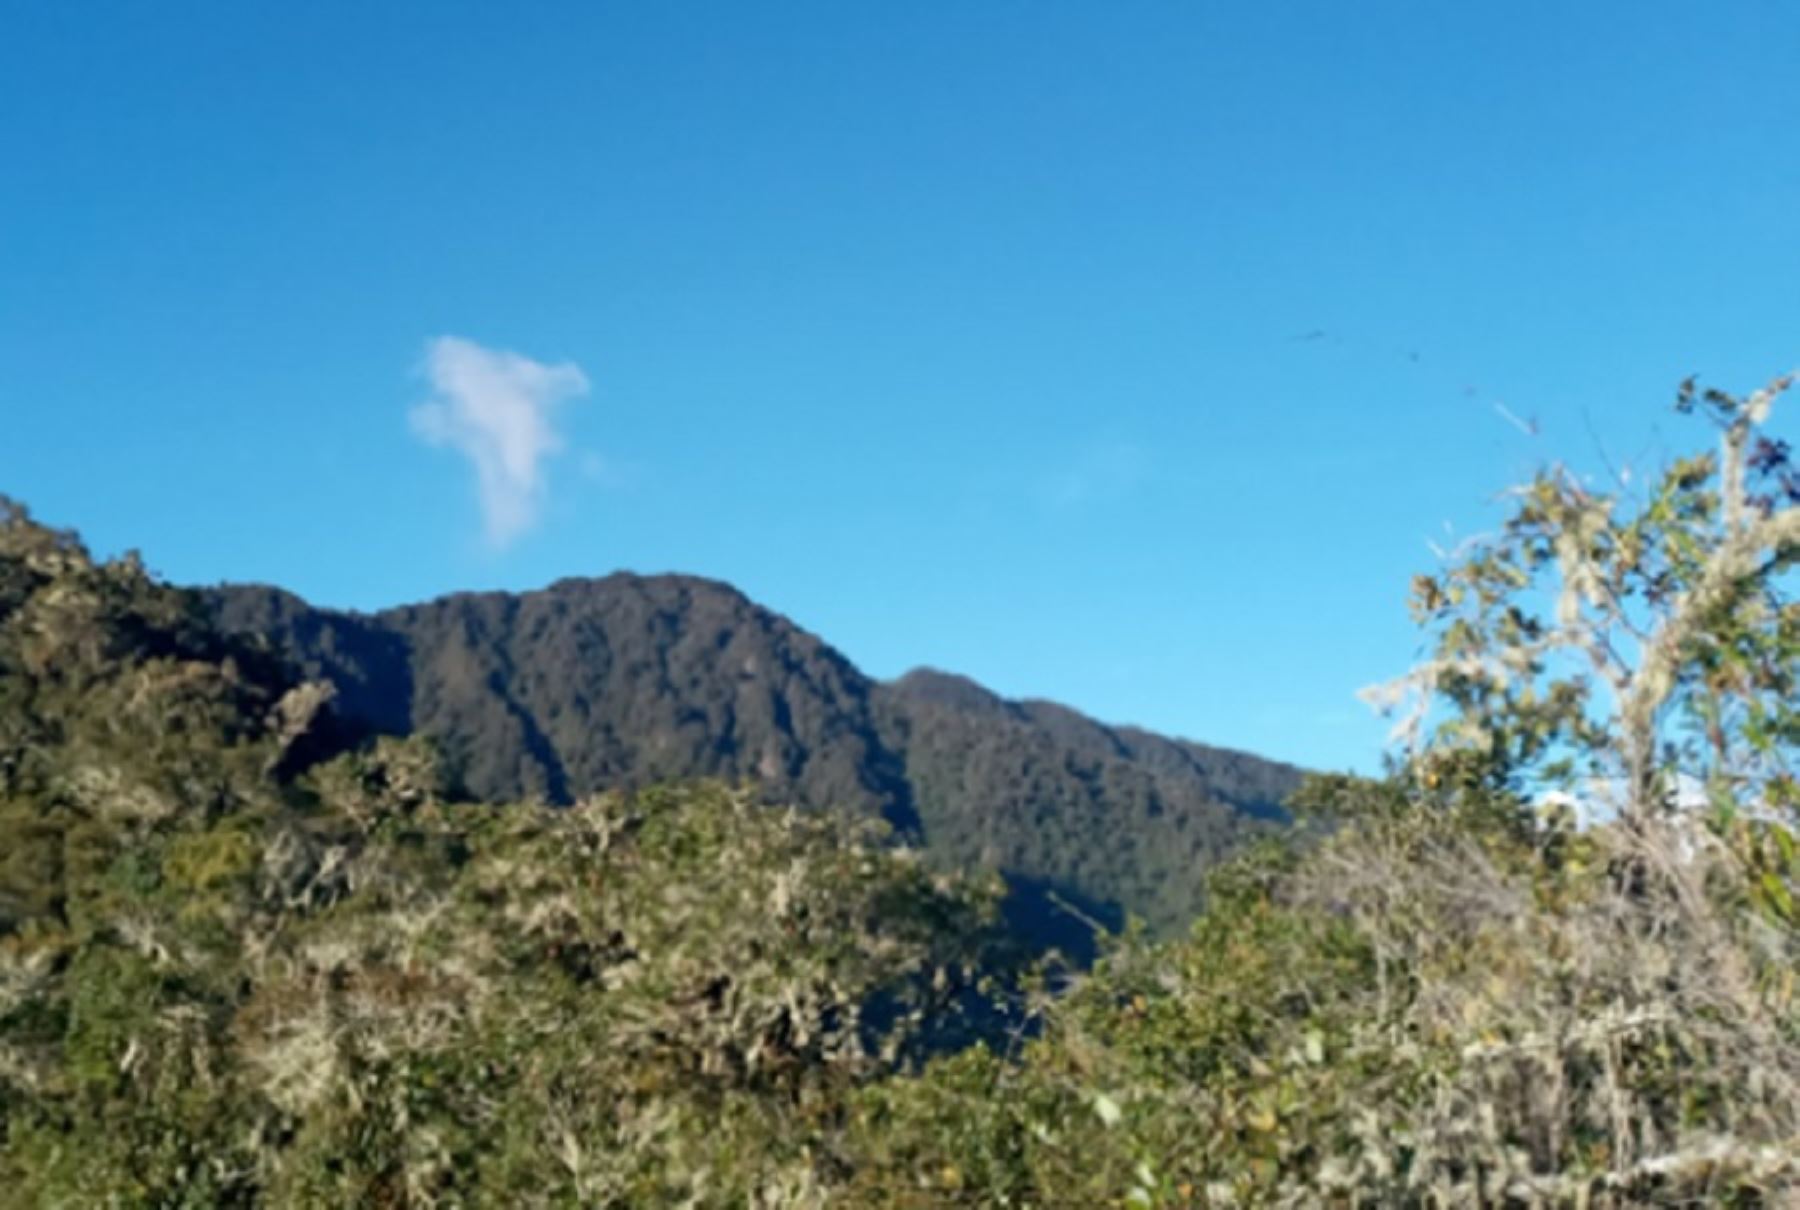 El Área de Conservación Regional Bosque Nublado Amaru-Huachocolpa-Chihuana tiene un área de 5,024.18 hectáreas y abarca parte de los territorios de las comunidades campesinas Chihuana y Huachocolpa, ubicadas en el distrito de Huachocolpa de la provincia de Tayacaja, en la región Huancavelica.